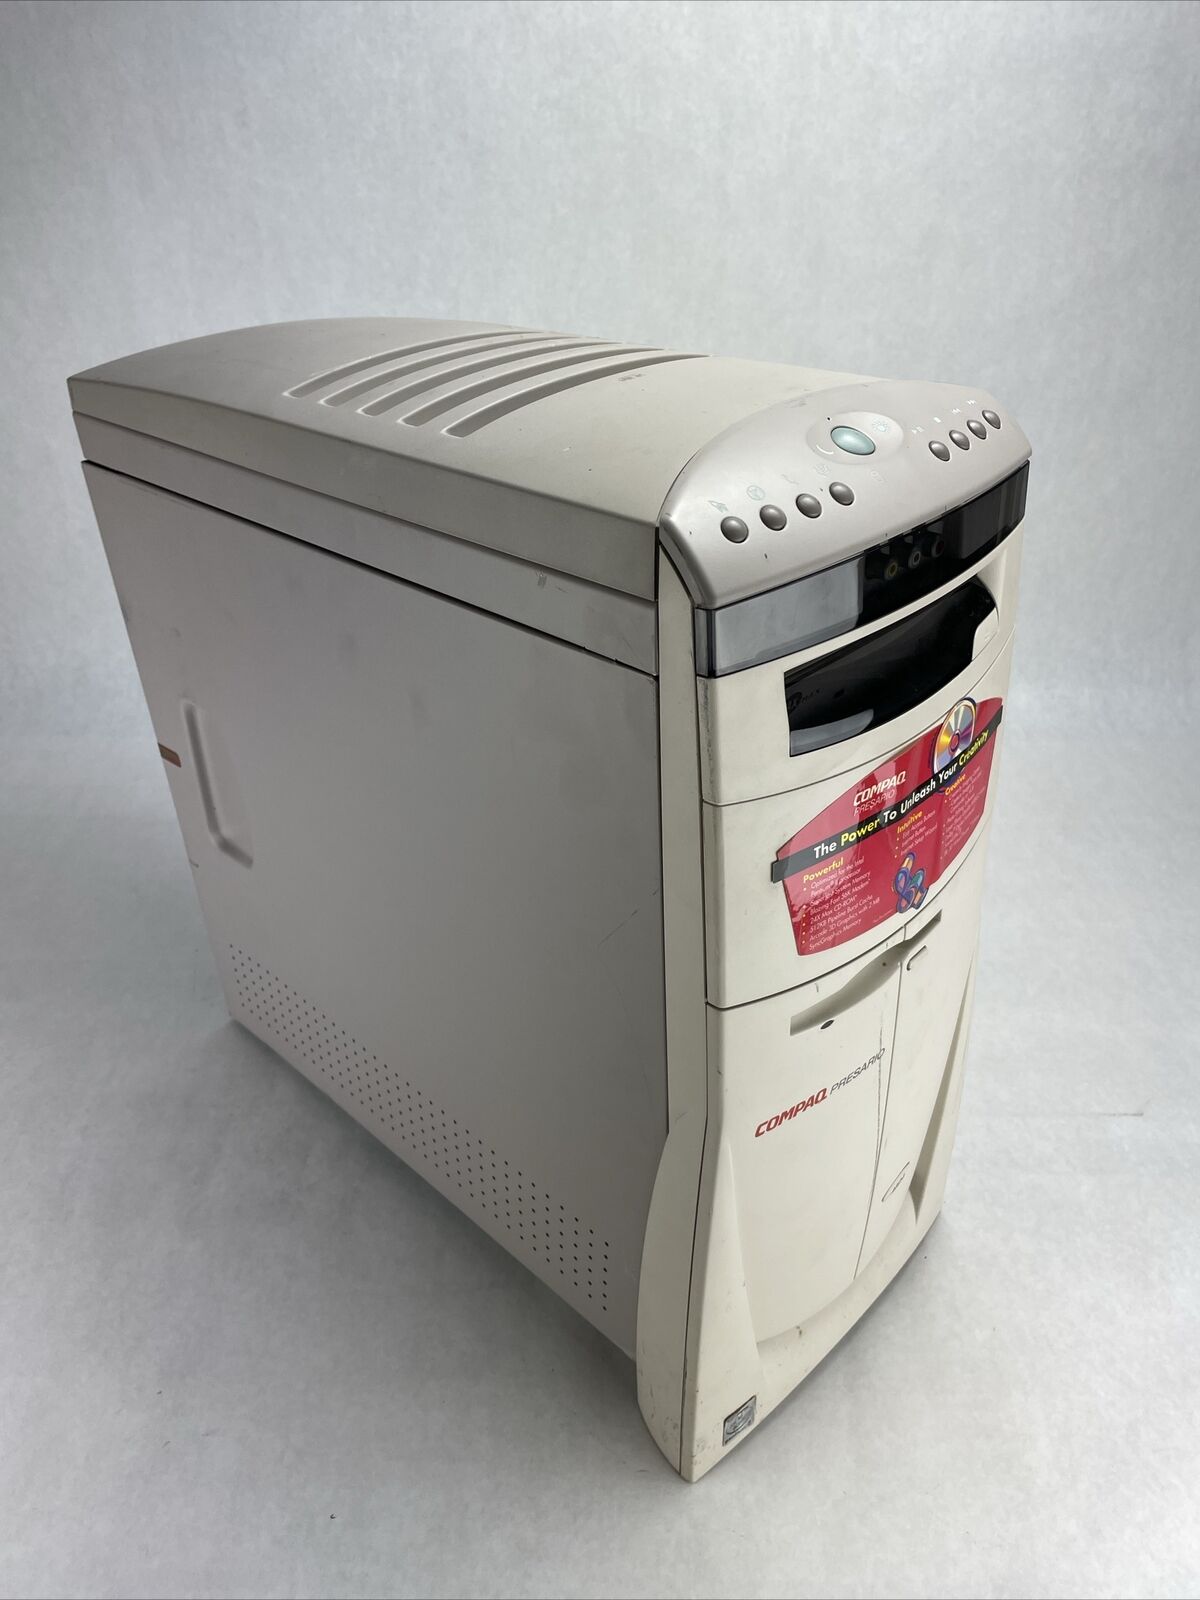 Compaq Presario 4824 MT Intel Pentium II 233MHz 32MB RAM No HDD No OS